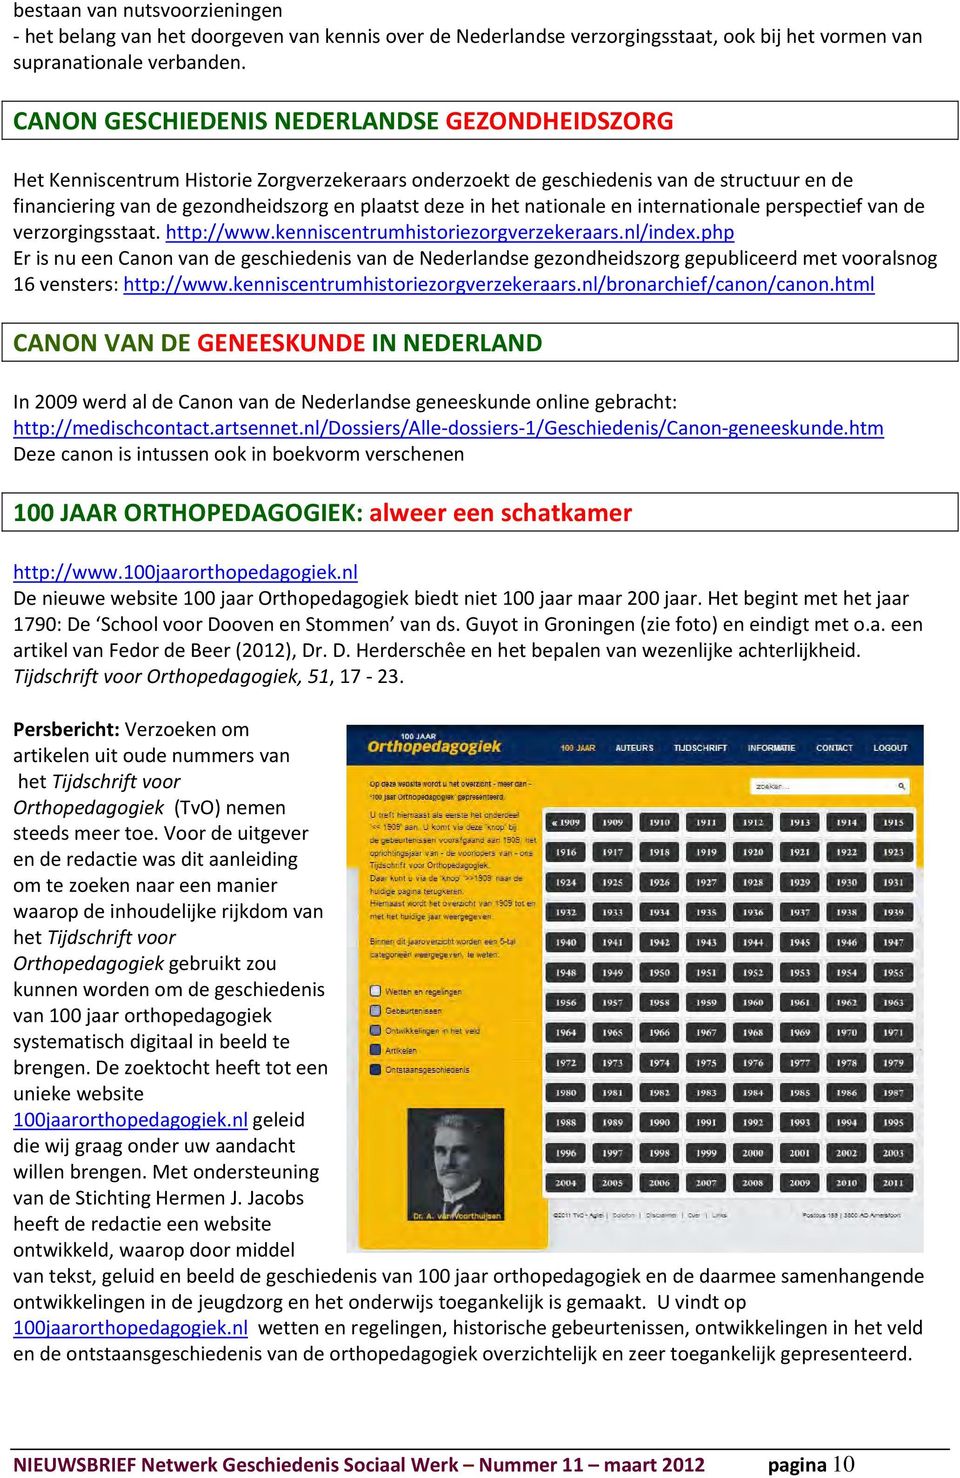 nationale en internationale perspectief van de verzorgingsstaat. http://www.kenniscentrumhistoriezorgverzekeraars.nl/index.